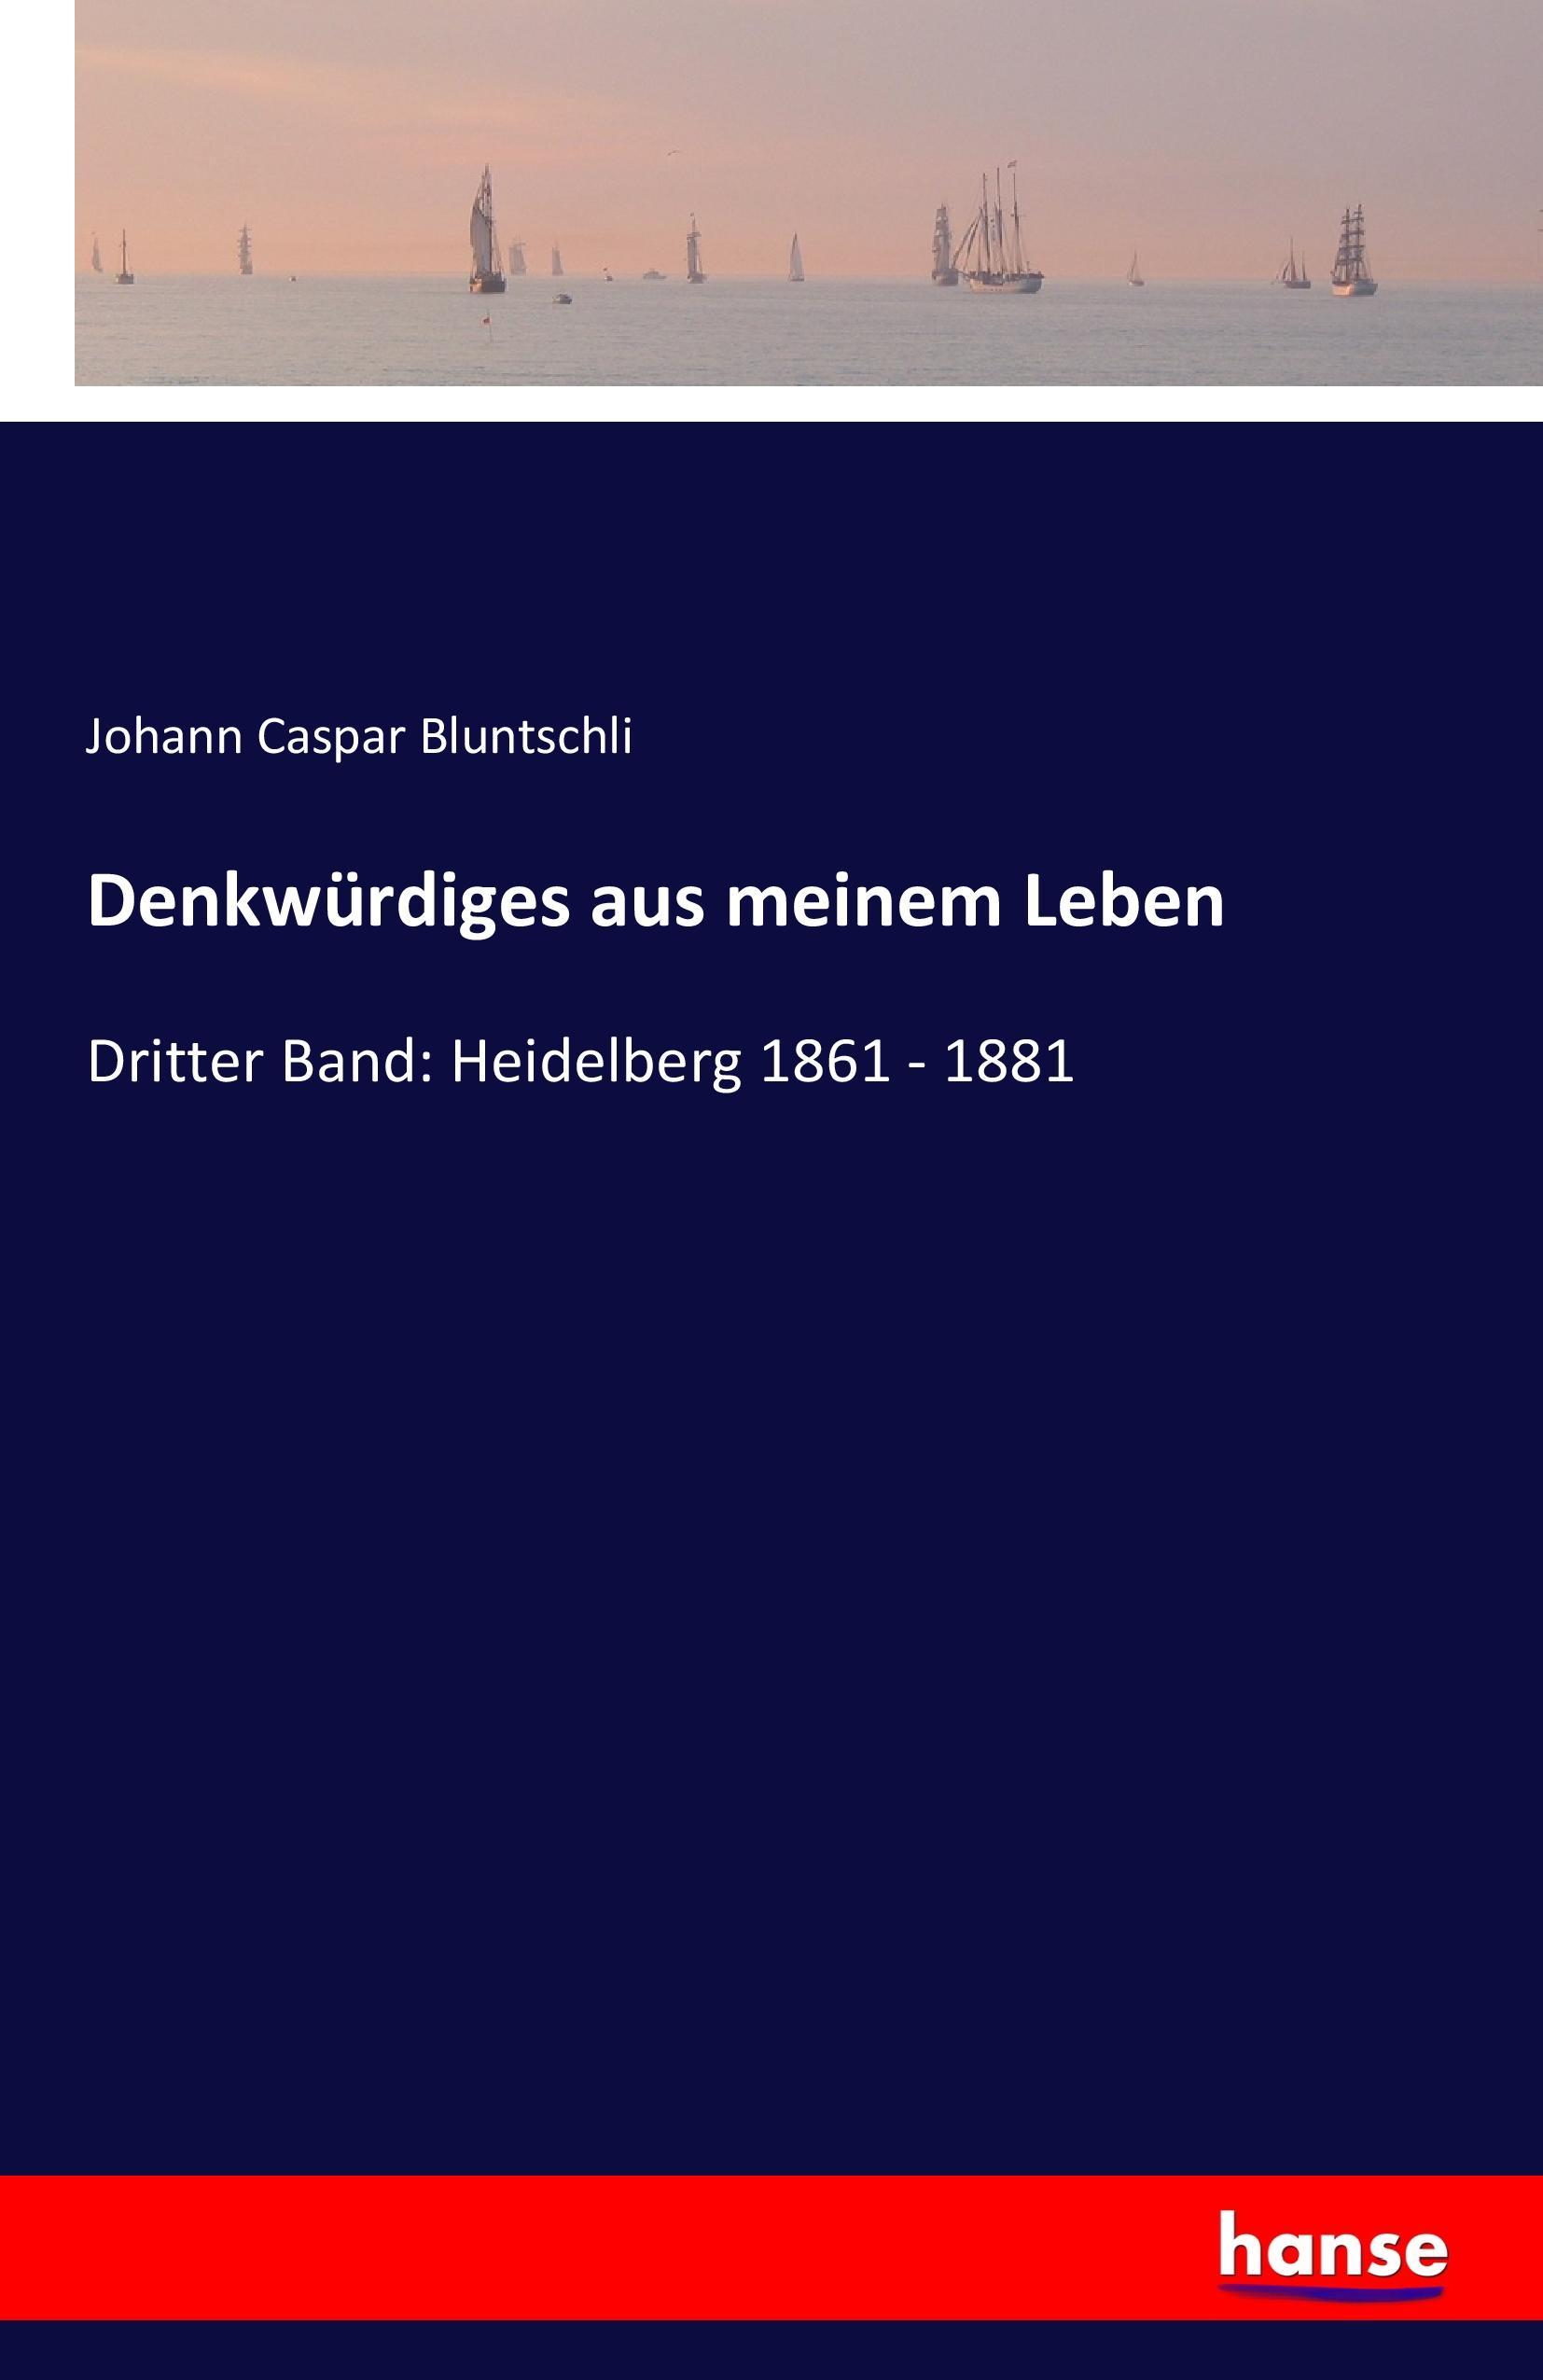 Denkwürdiges aus meinem Leben | Dritter Band: Heidelberg 1861 - 1881 | Johann Caspar Bluntschli | Taschenbuch | Paperback | 528 S. | Deutsch | 2016 | hansebooks | EAN 9783741130458 - Bluntschli, Johann Caspar